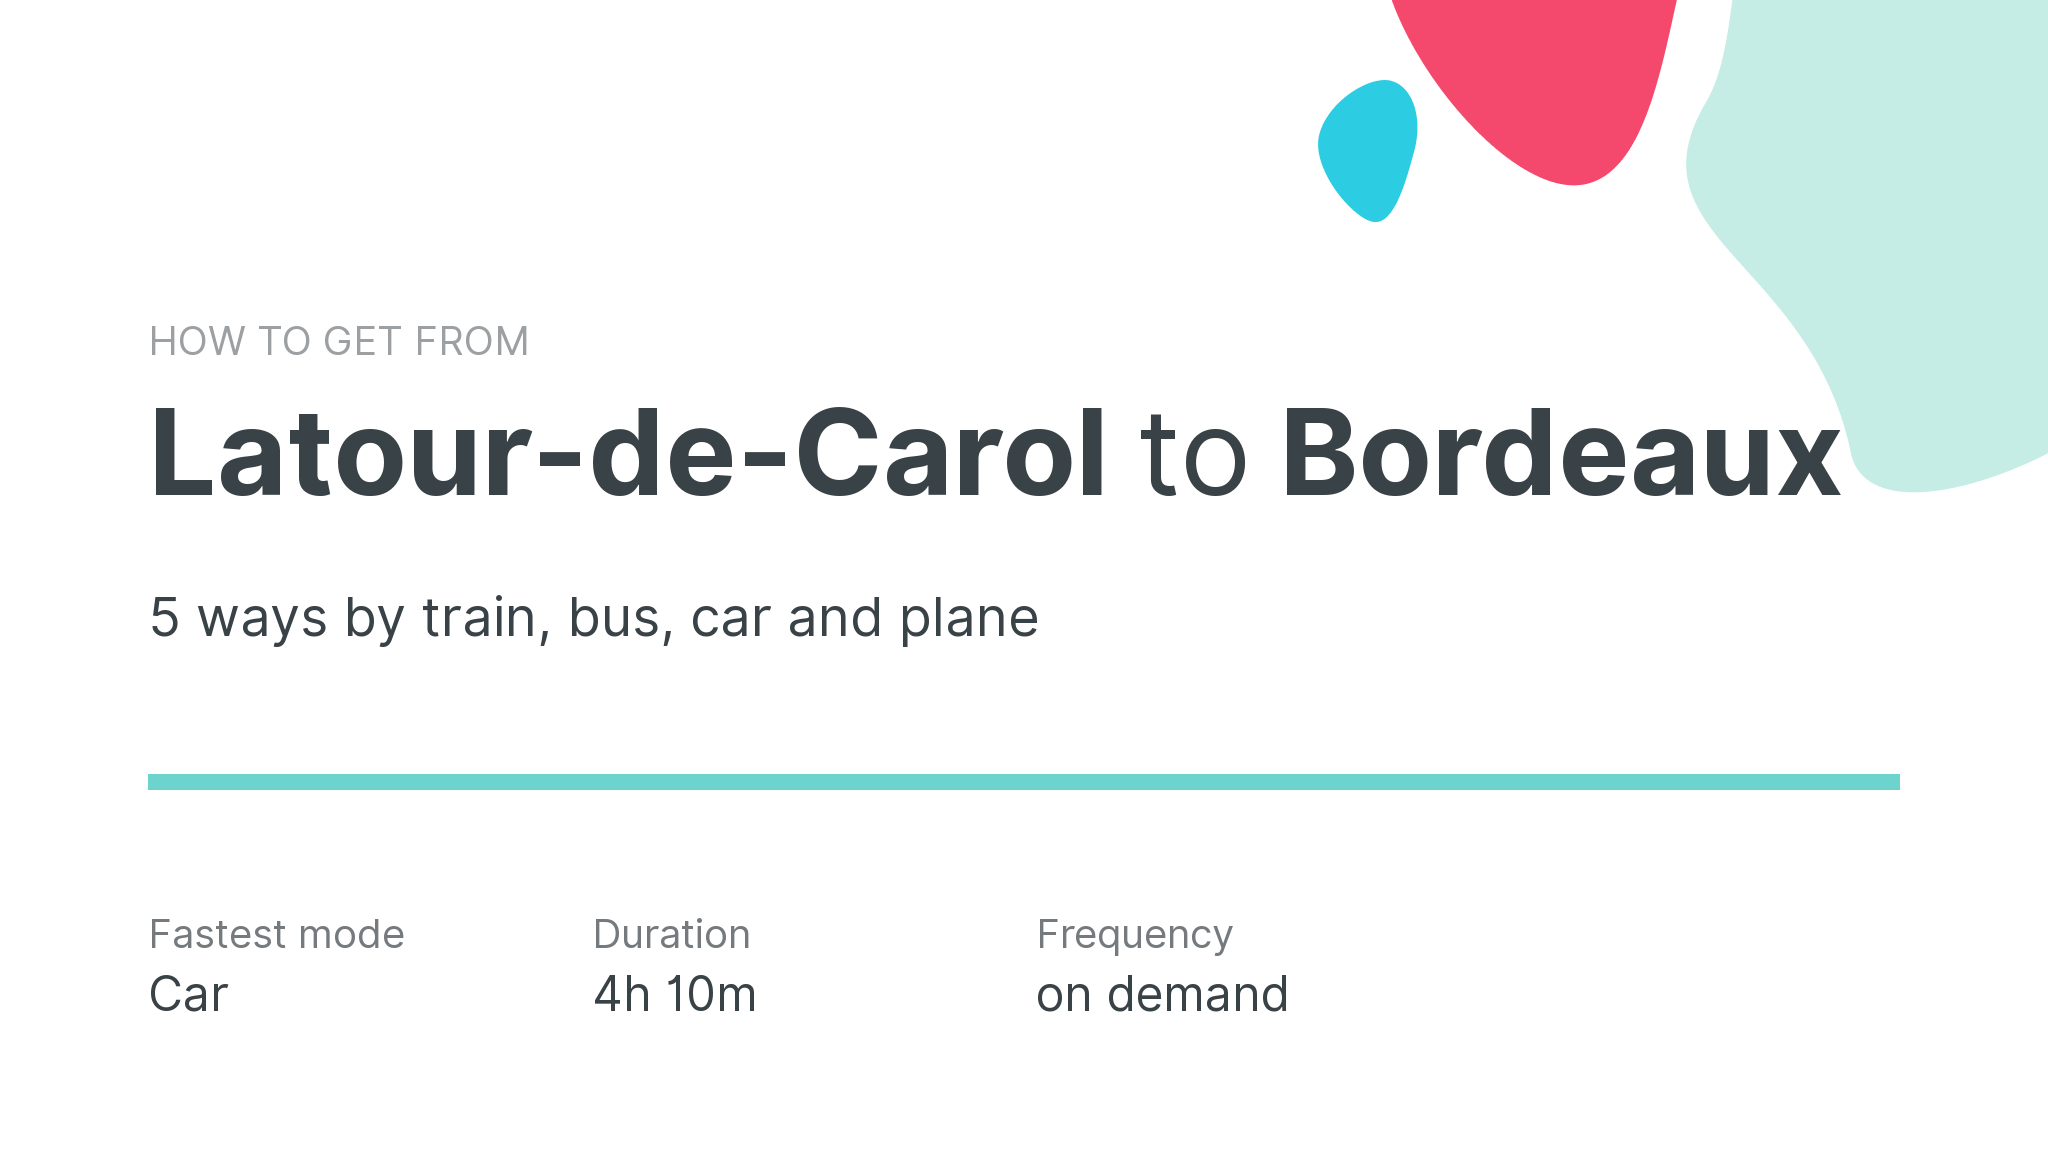 How do I get from Latour-de-Carol to Bordeaux